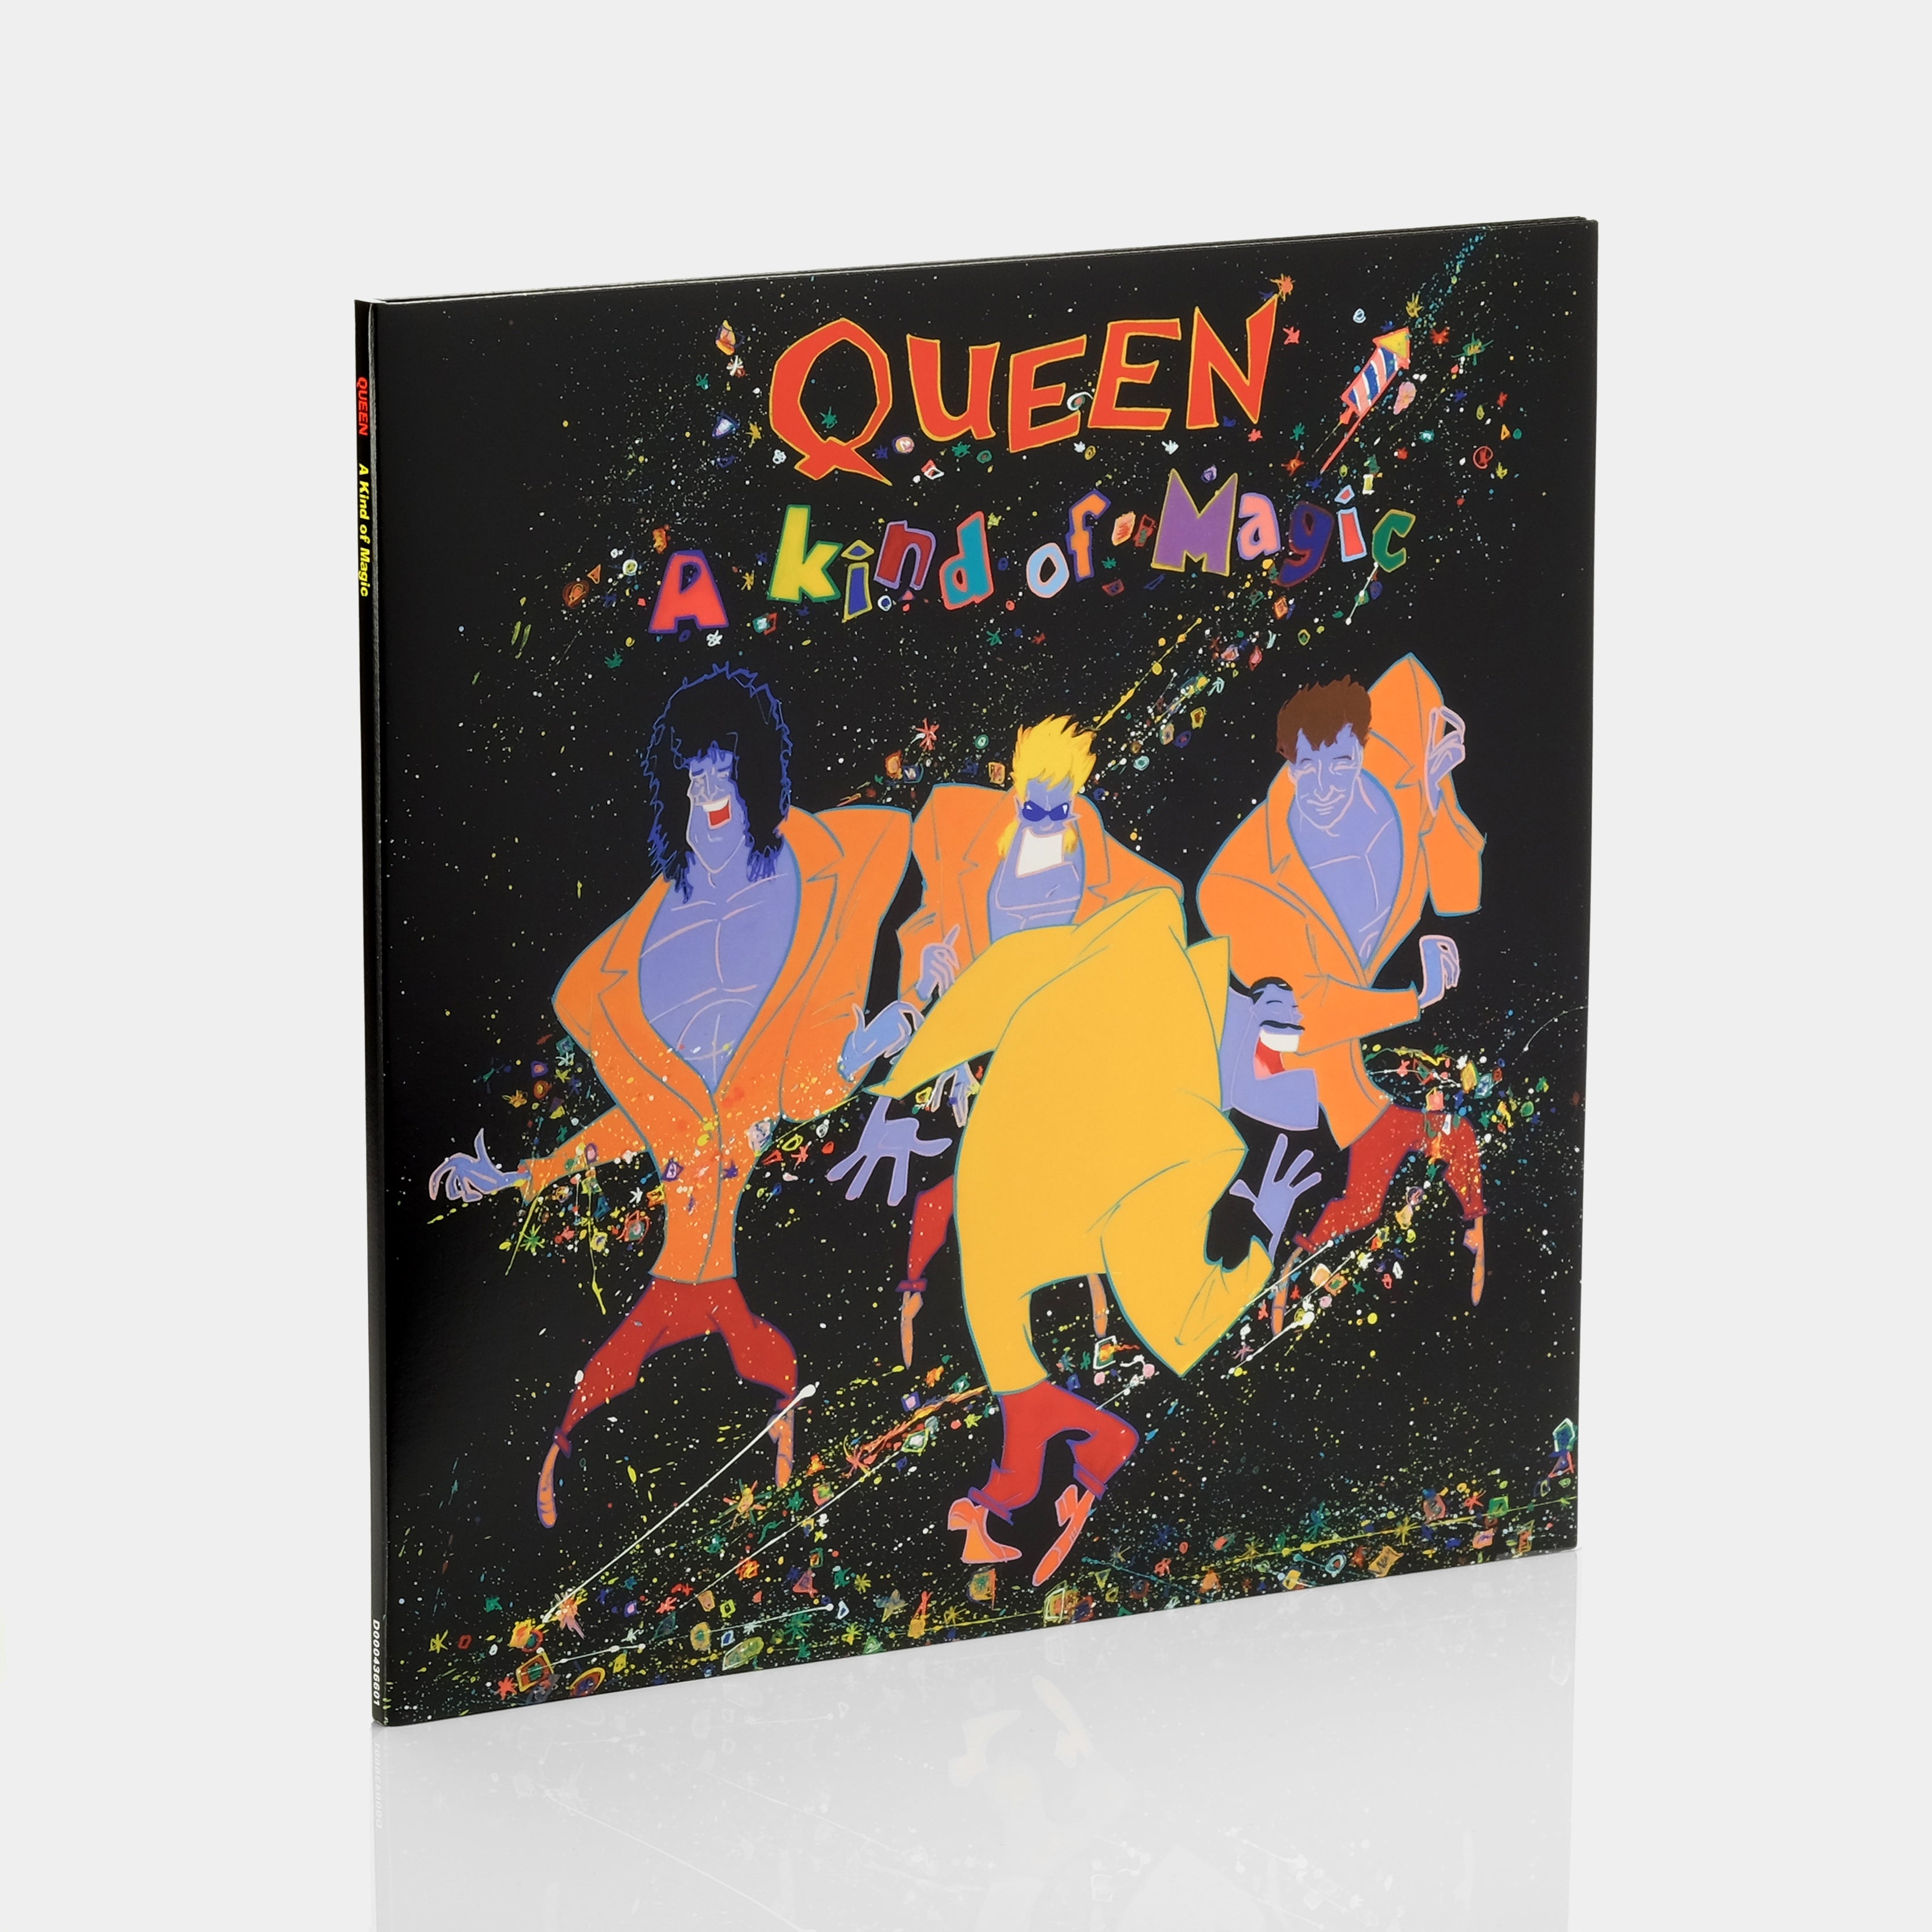 Queen - A Kind of Magic LP Vinyl Record